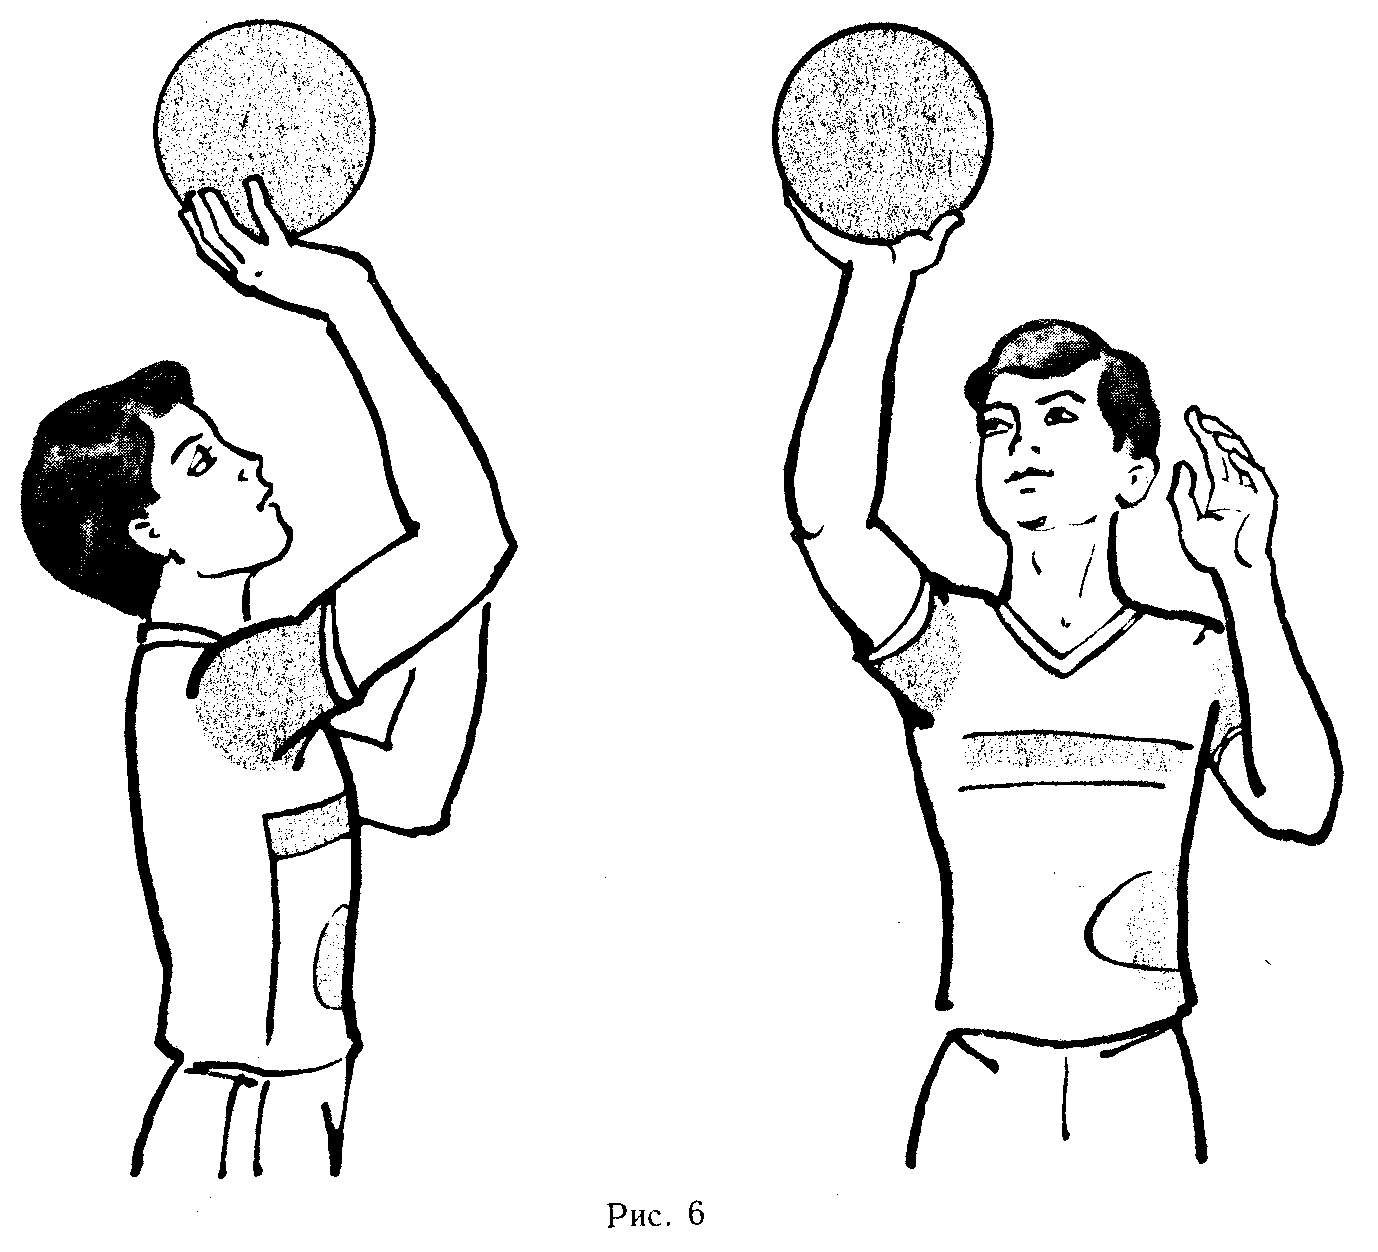 Мяч вводят в игру в волейболе